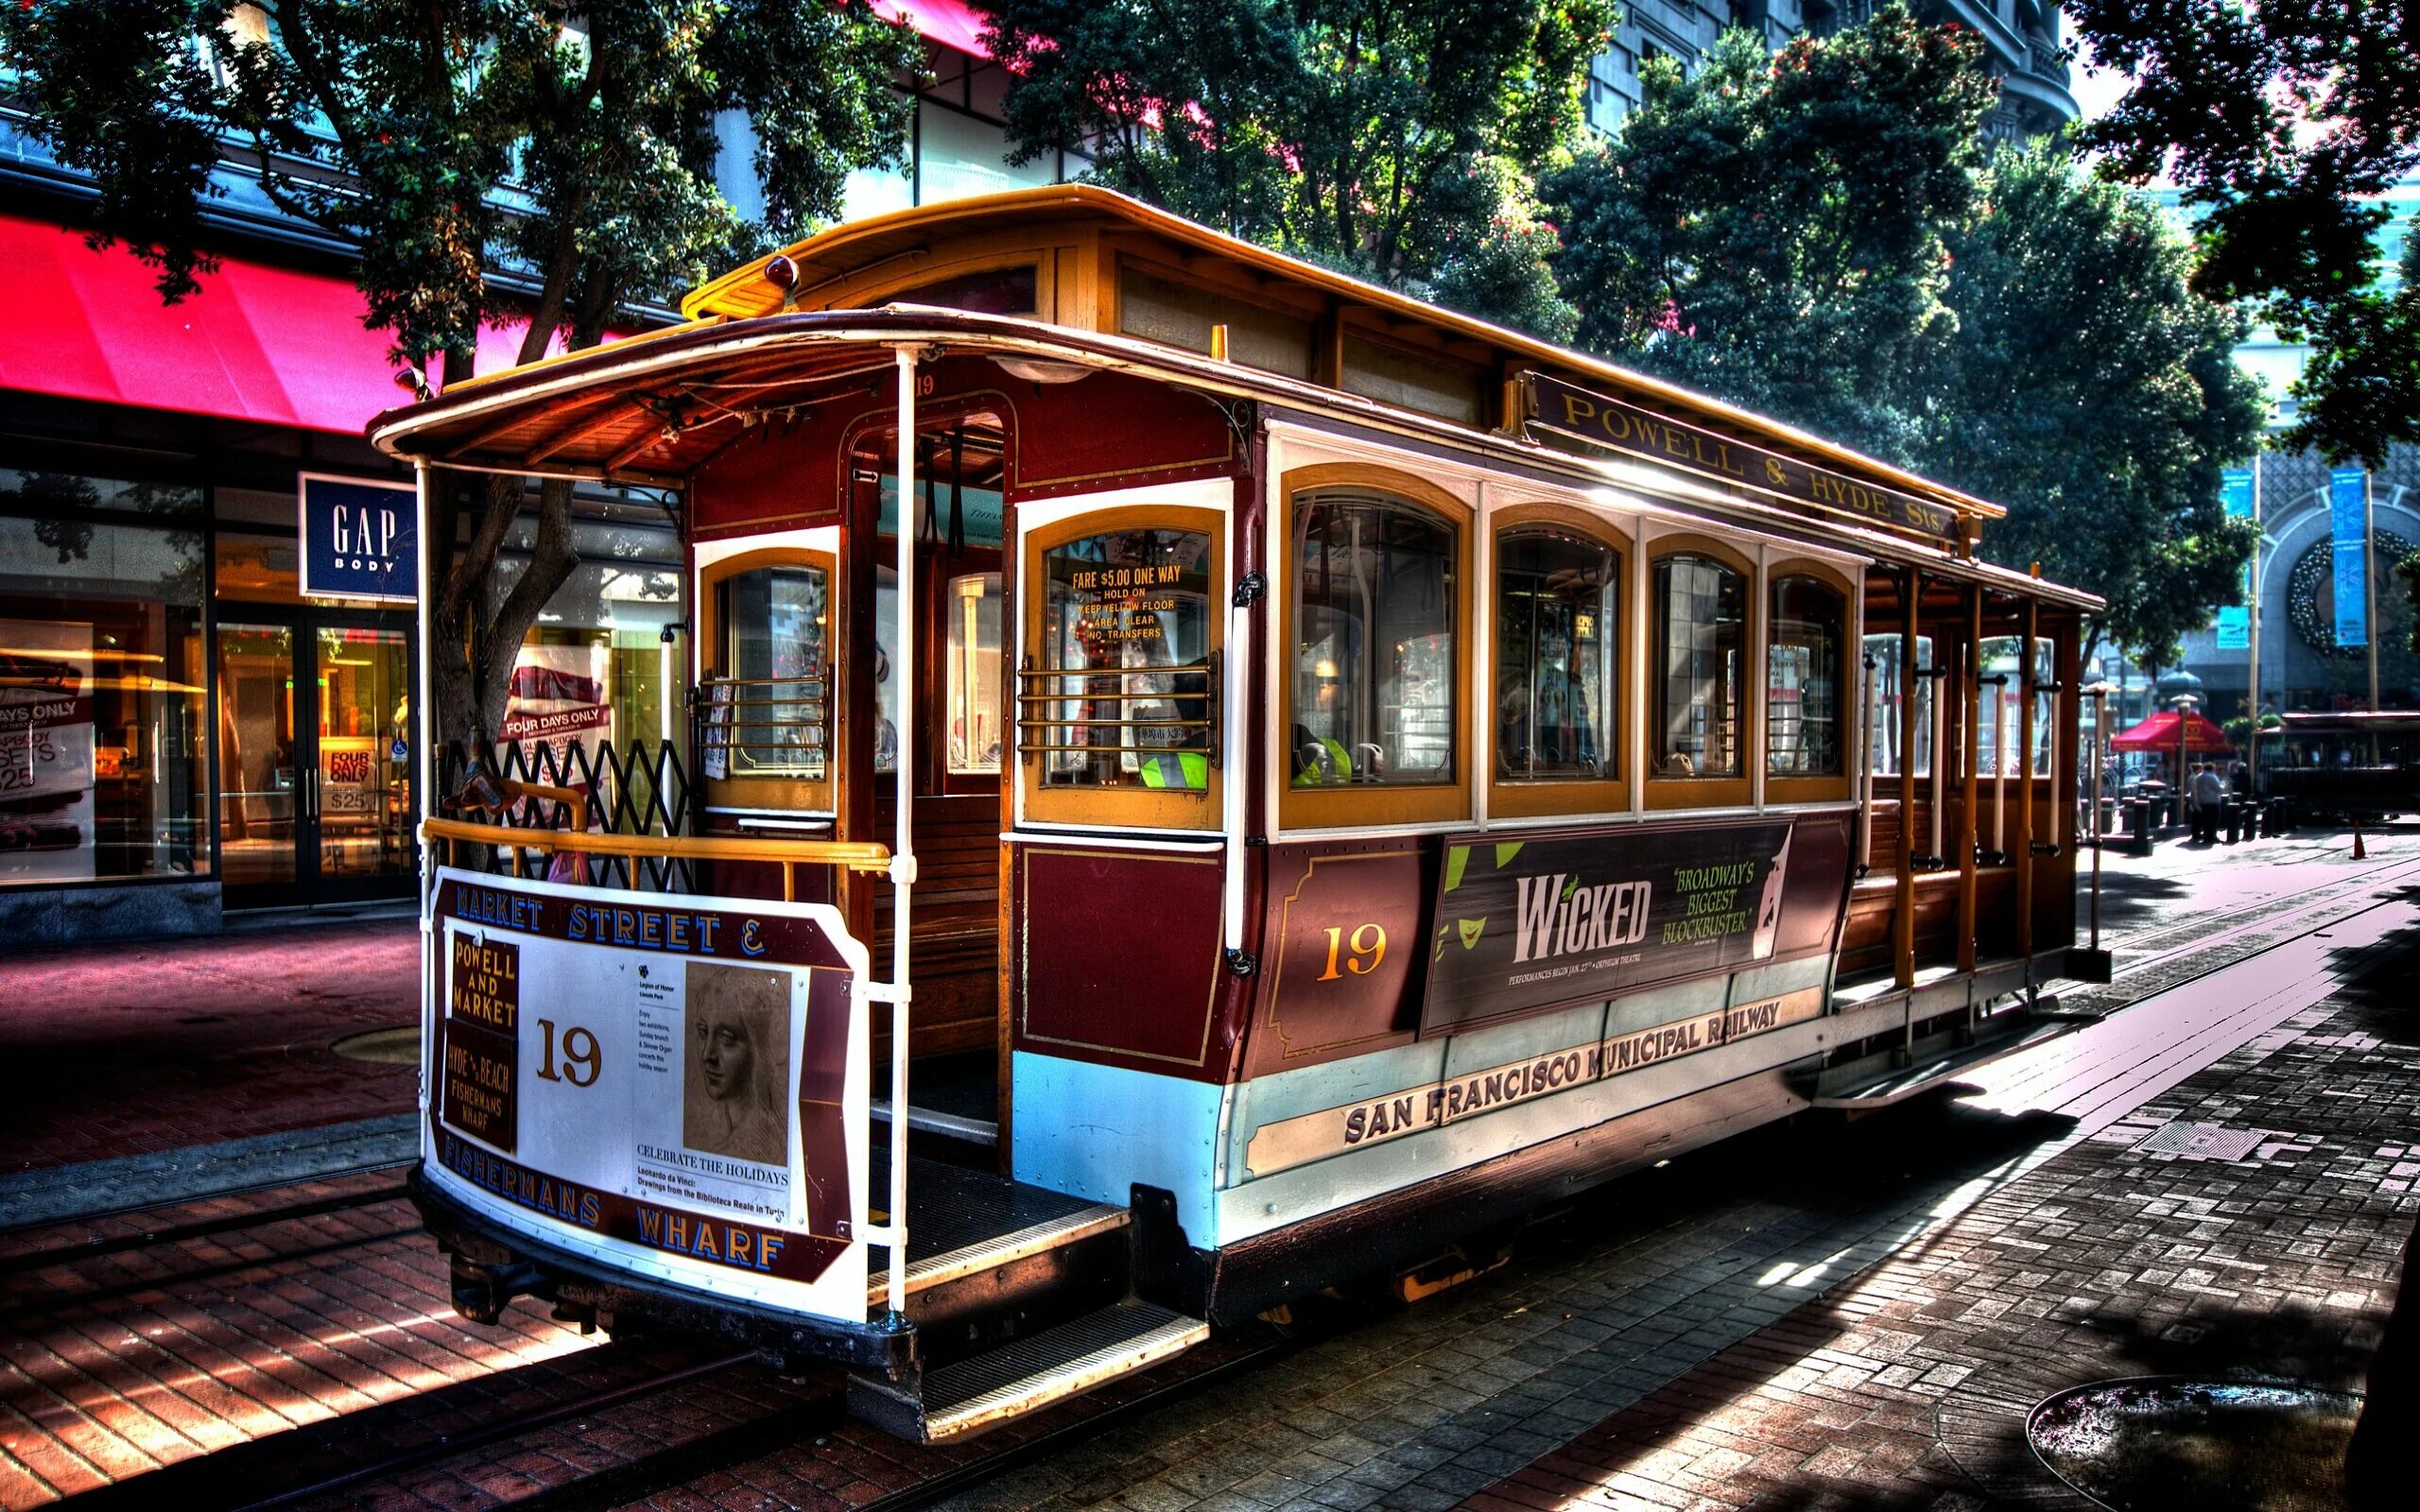 Канатный трамвай. Канатный трамвай Сан-Франциско. Сан Франциско трамвайчик. Сан Франциско Cable car. Ретро трамвай в Сан-Франциско.